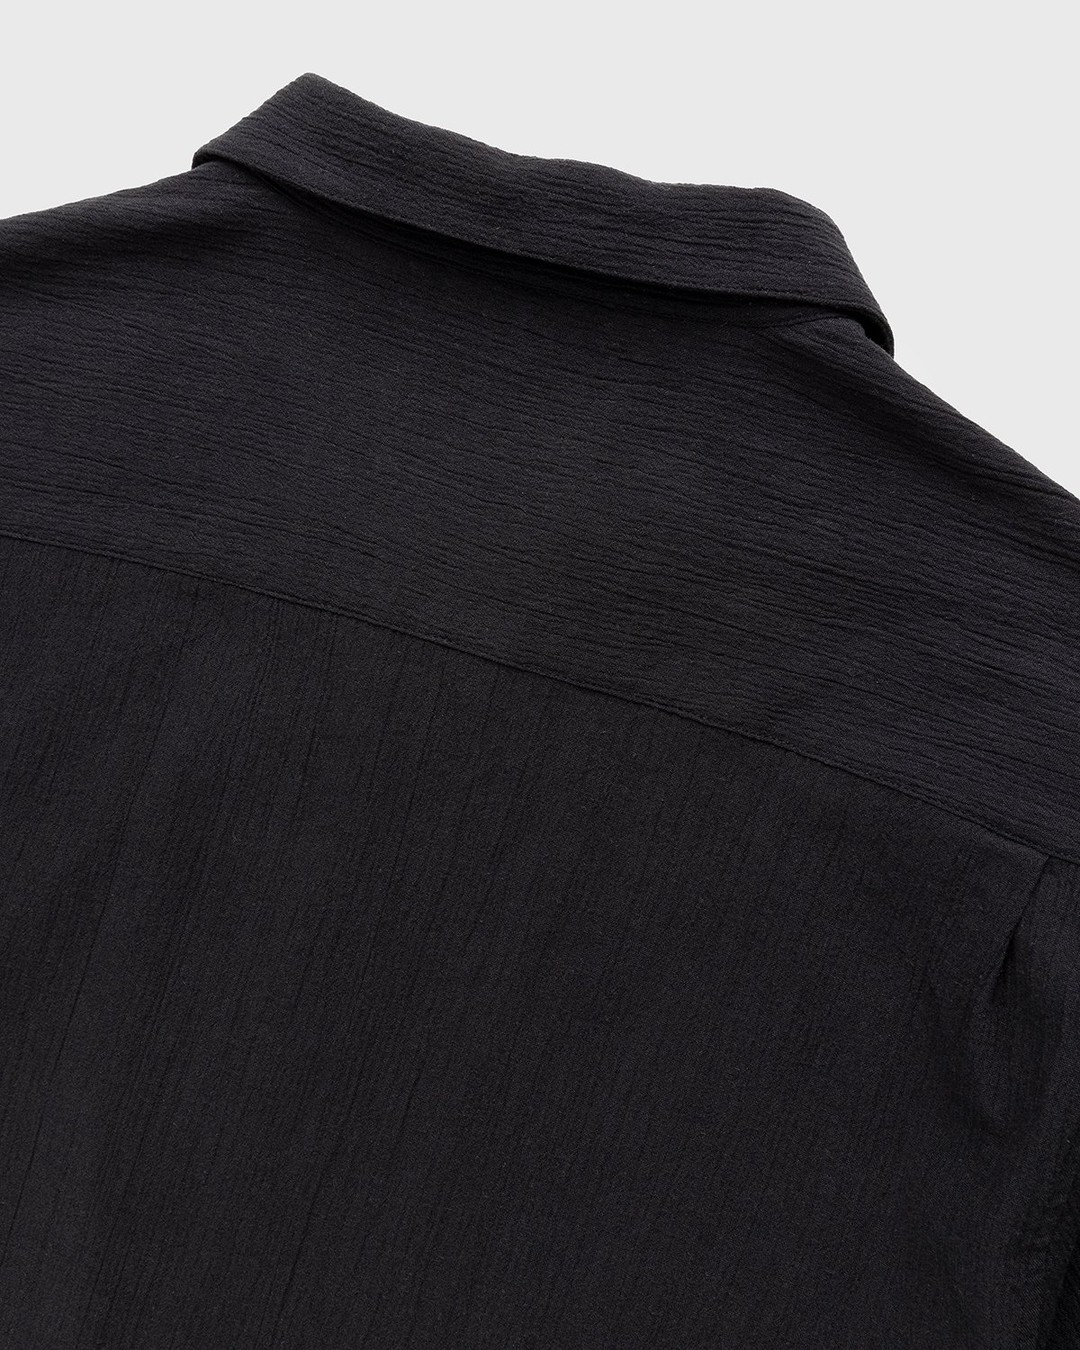 Highsnobiety – Crepe Short Sleeve Shirt Black - Shortsleeve Shirts - Black - Image 3